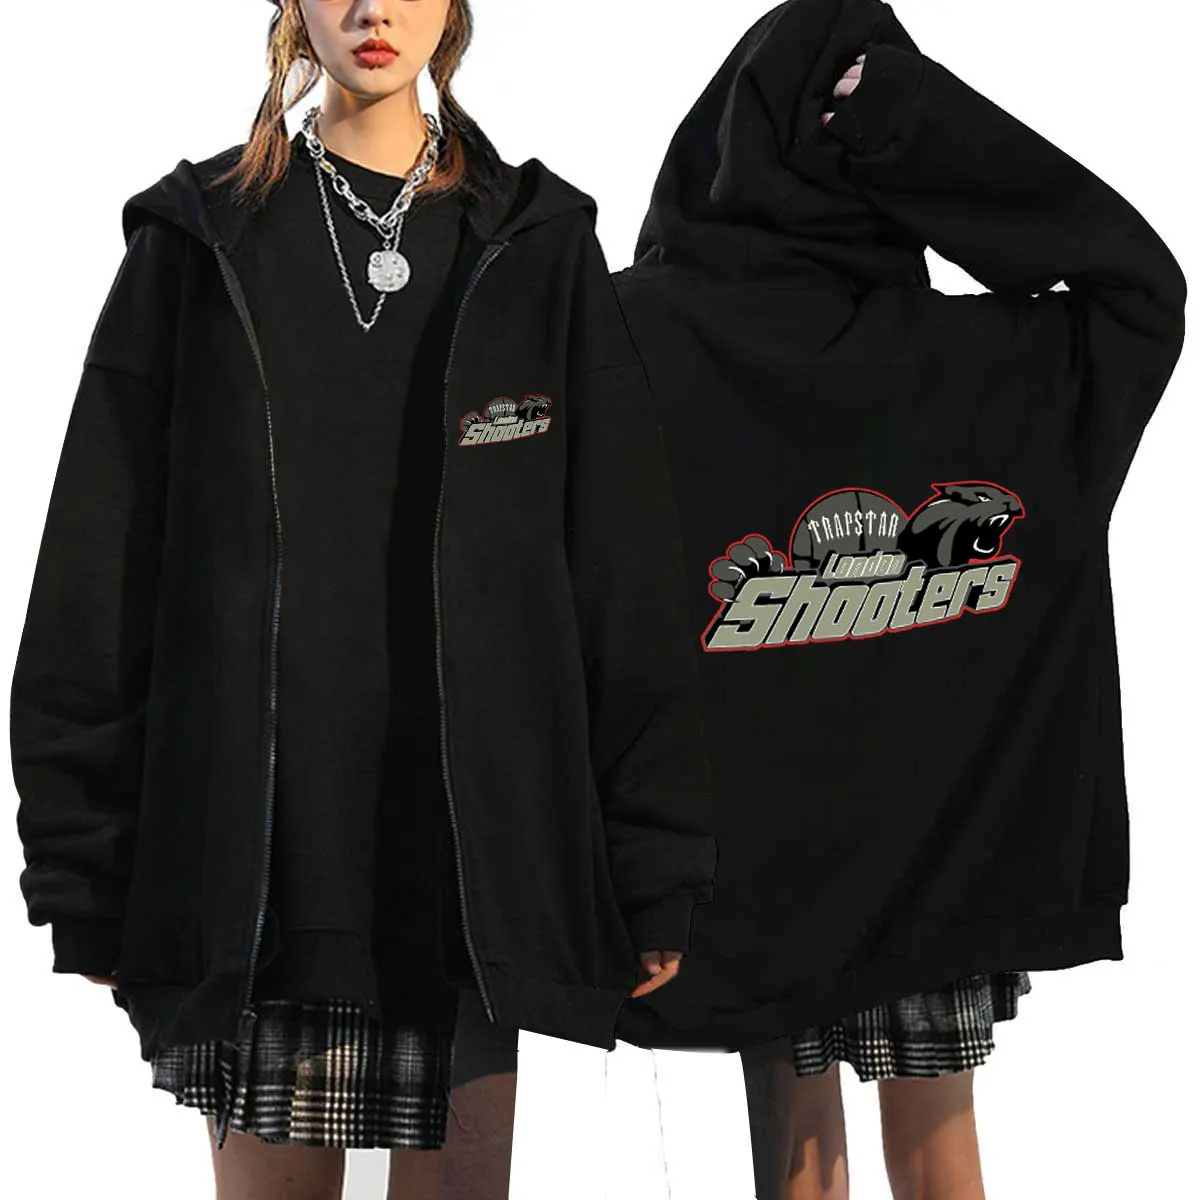 Trapstar Zip Per Hoodies Roupas Masculinas Oversized Coat Tops Women Men Fashion Anime Zipper Sweat Femme Streetwear Jackets